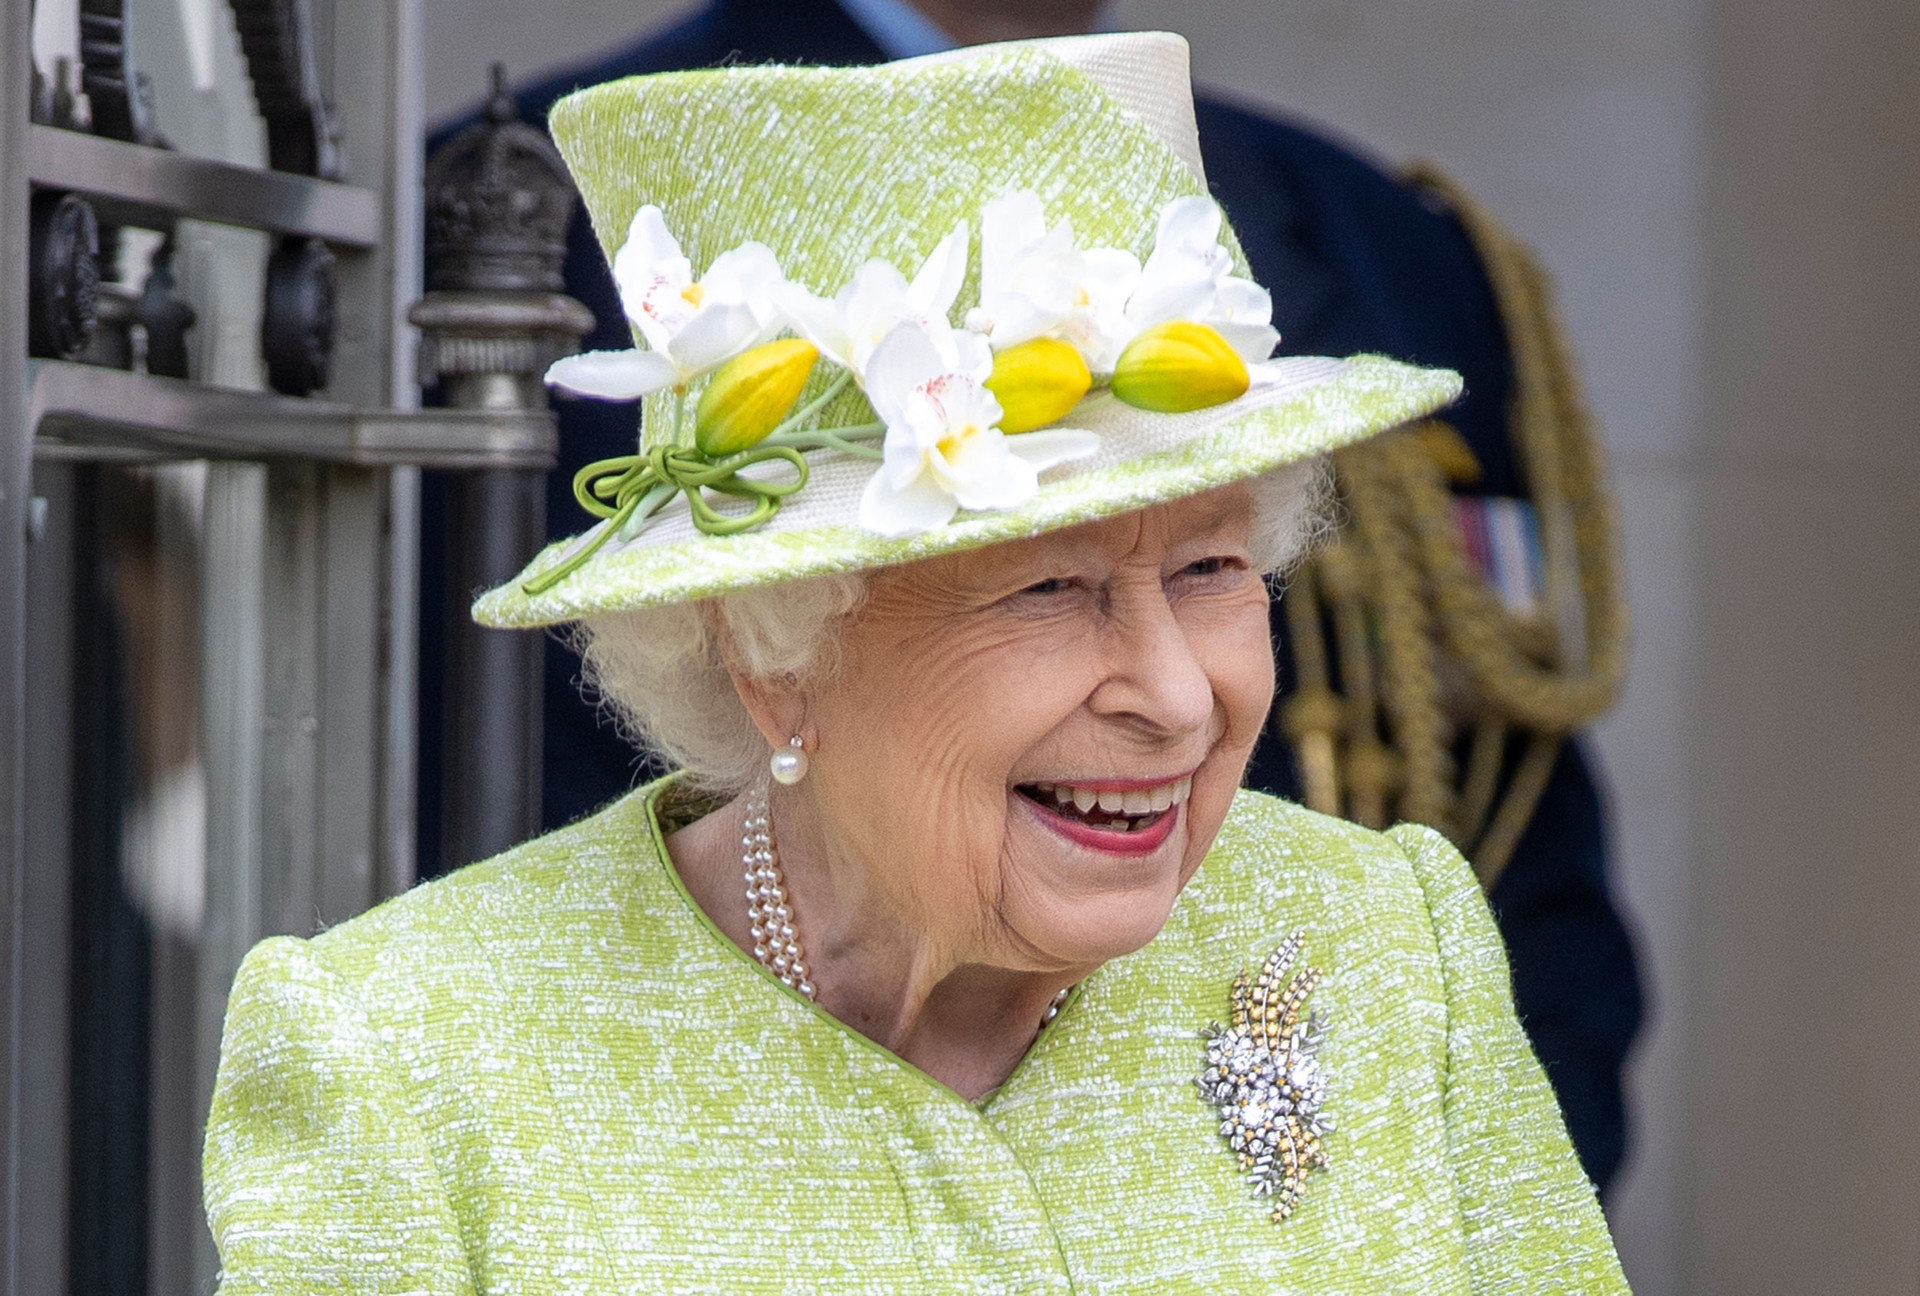 Nữ hoàng trong chuyến thăm tới Đài tưởng niệm Lực lượng Không quân Hoàng gia Australia vào ngày 31/3/2021 gần Egham, Anh. Ảnh: Getty Images.